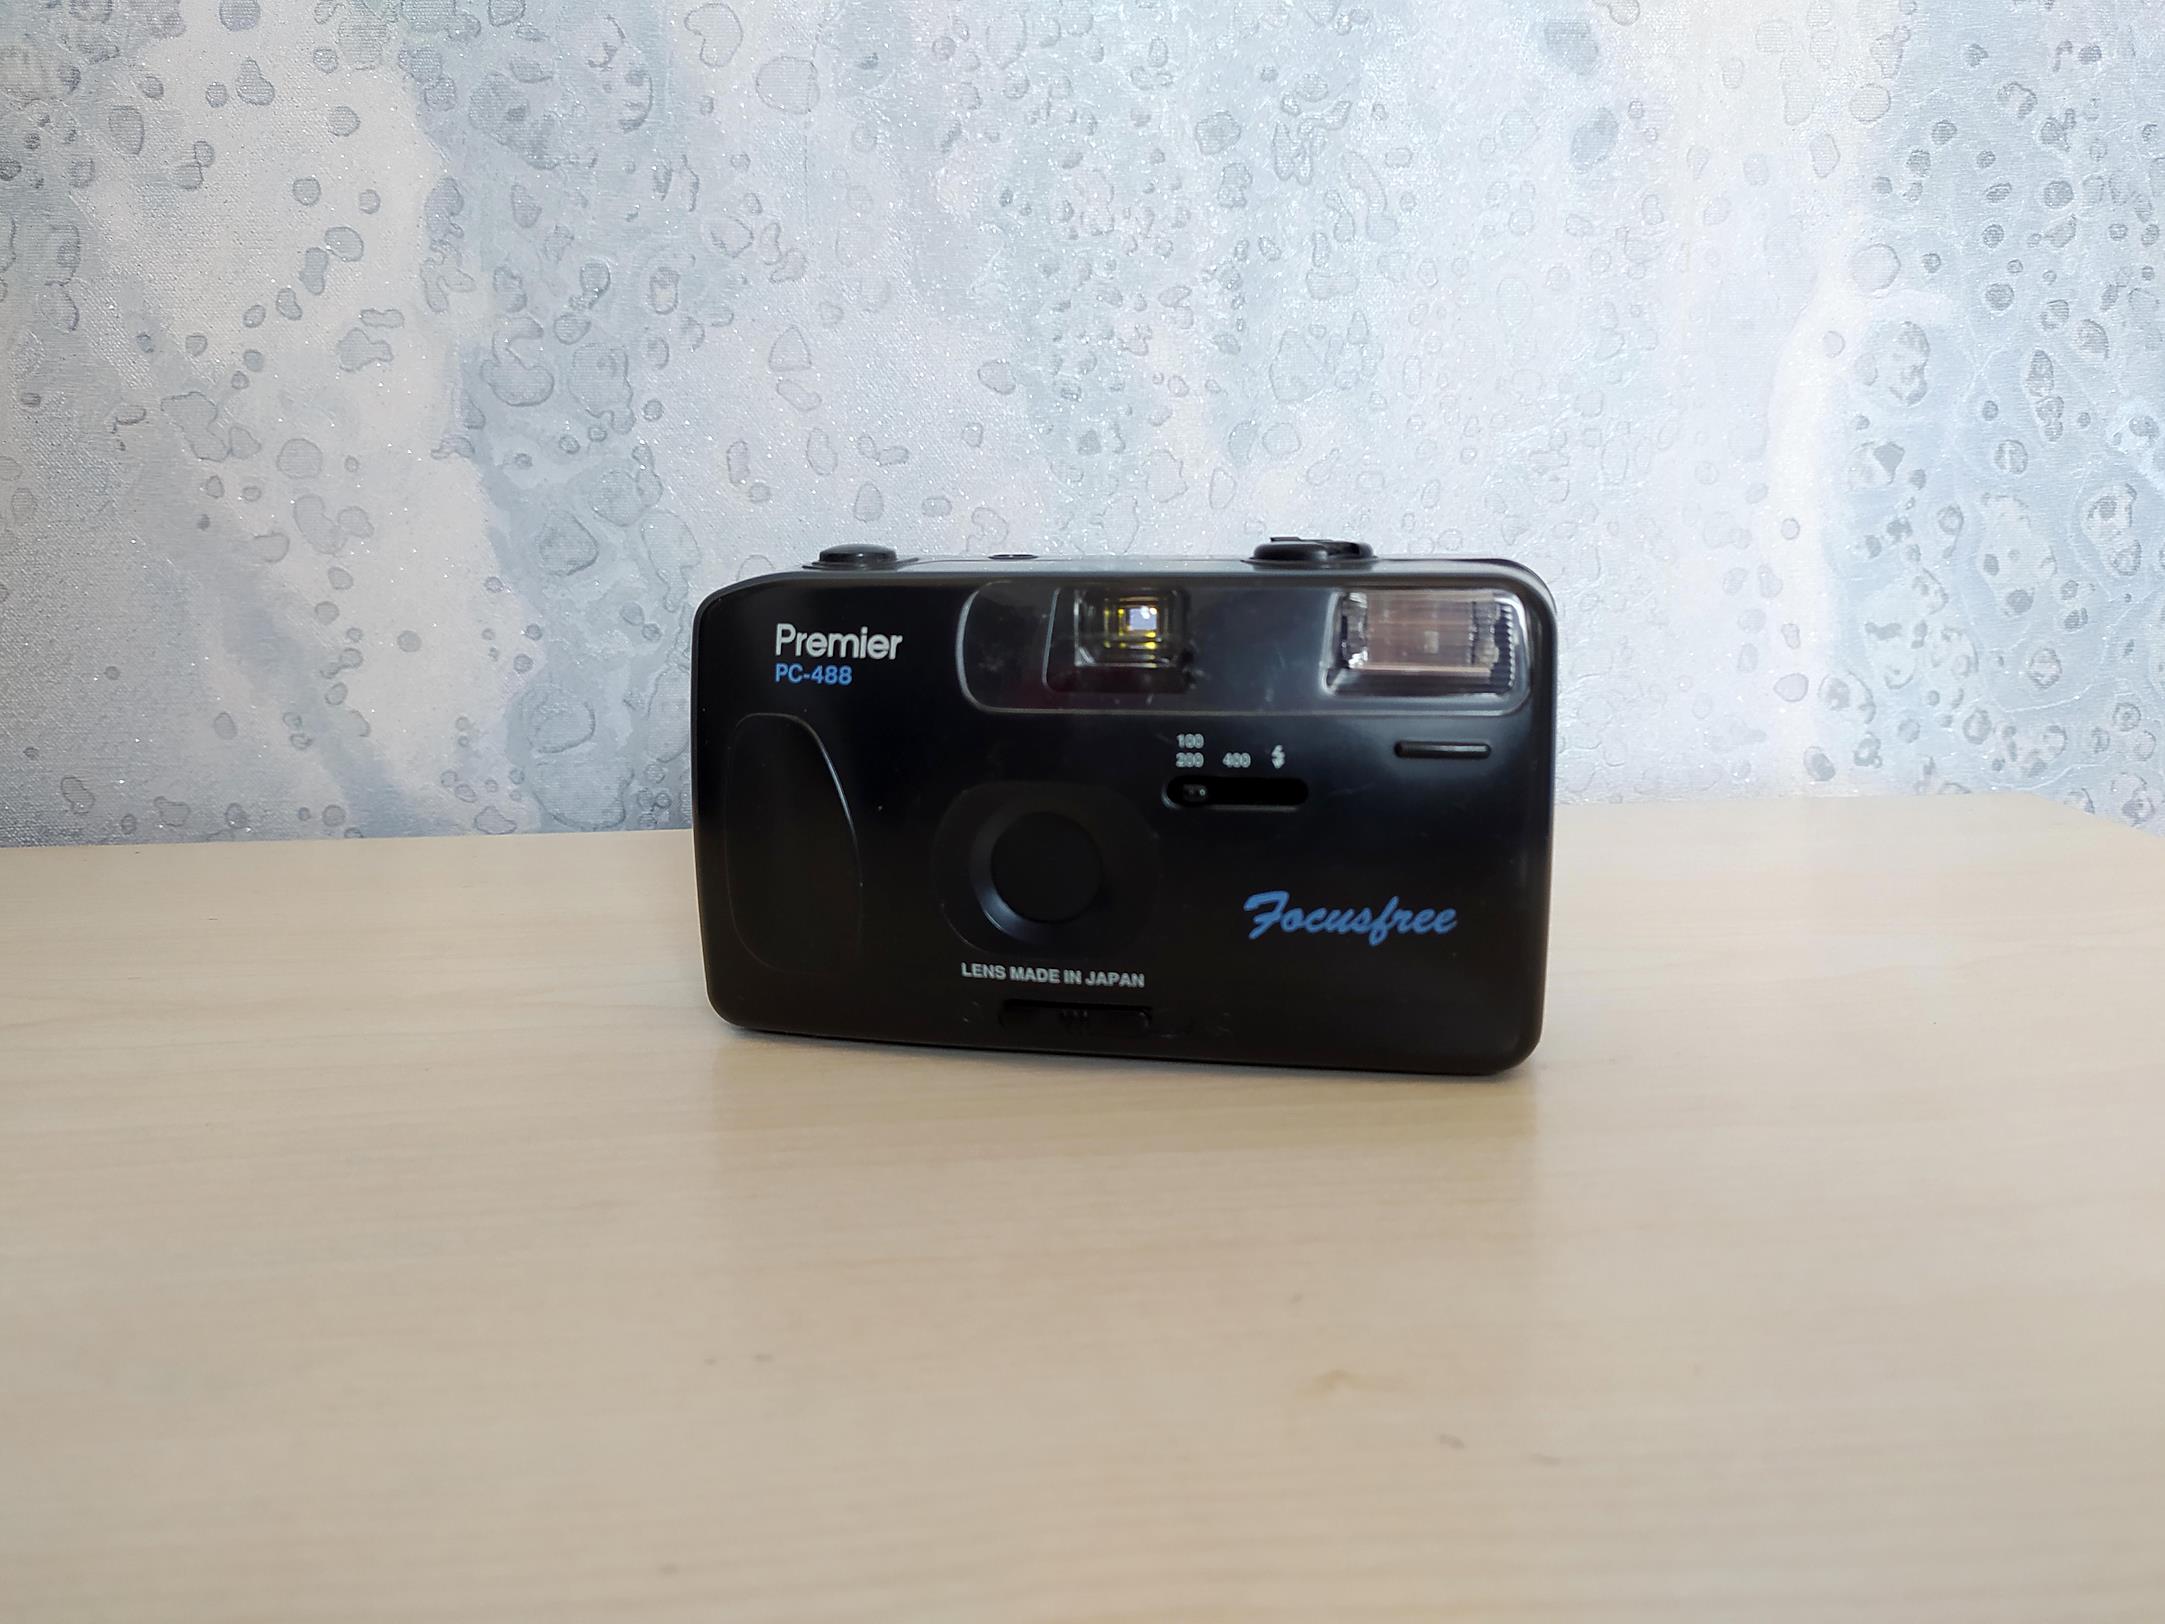 دوربین قدیمی PREMIER PC-488 با جعبه